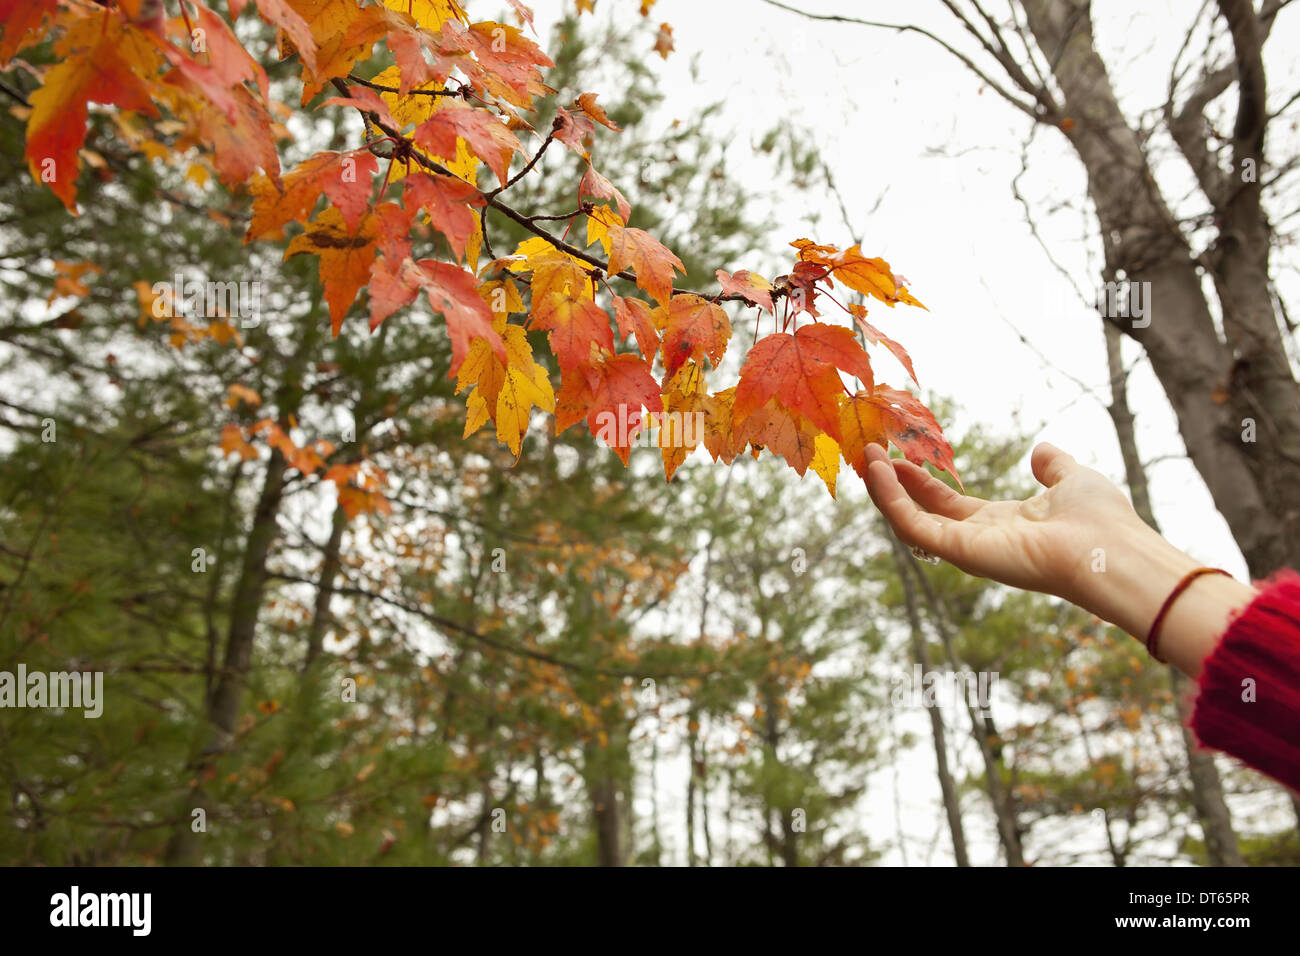 Une personne allant jusqu'à l'automne feuillage sur une branche d'arbre. Banque D'Images